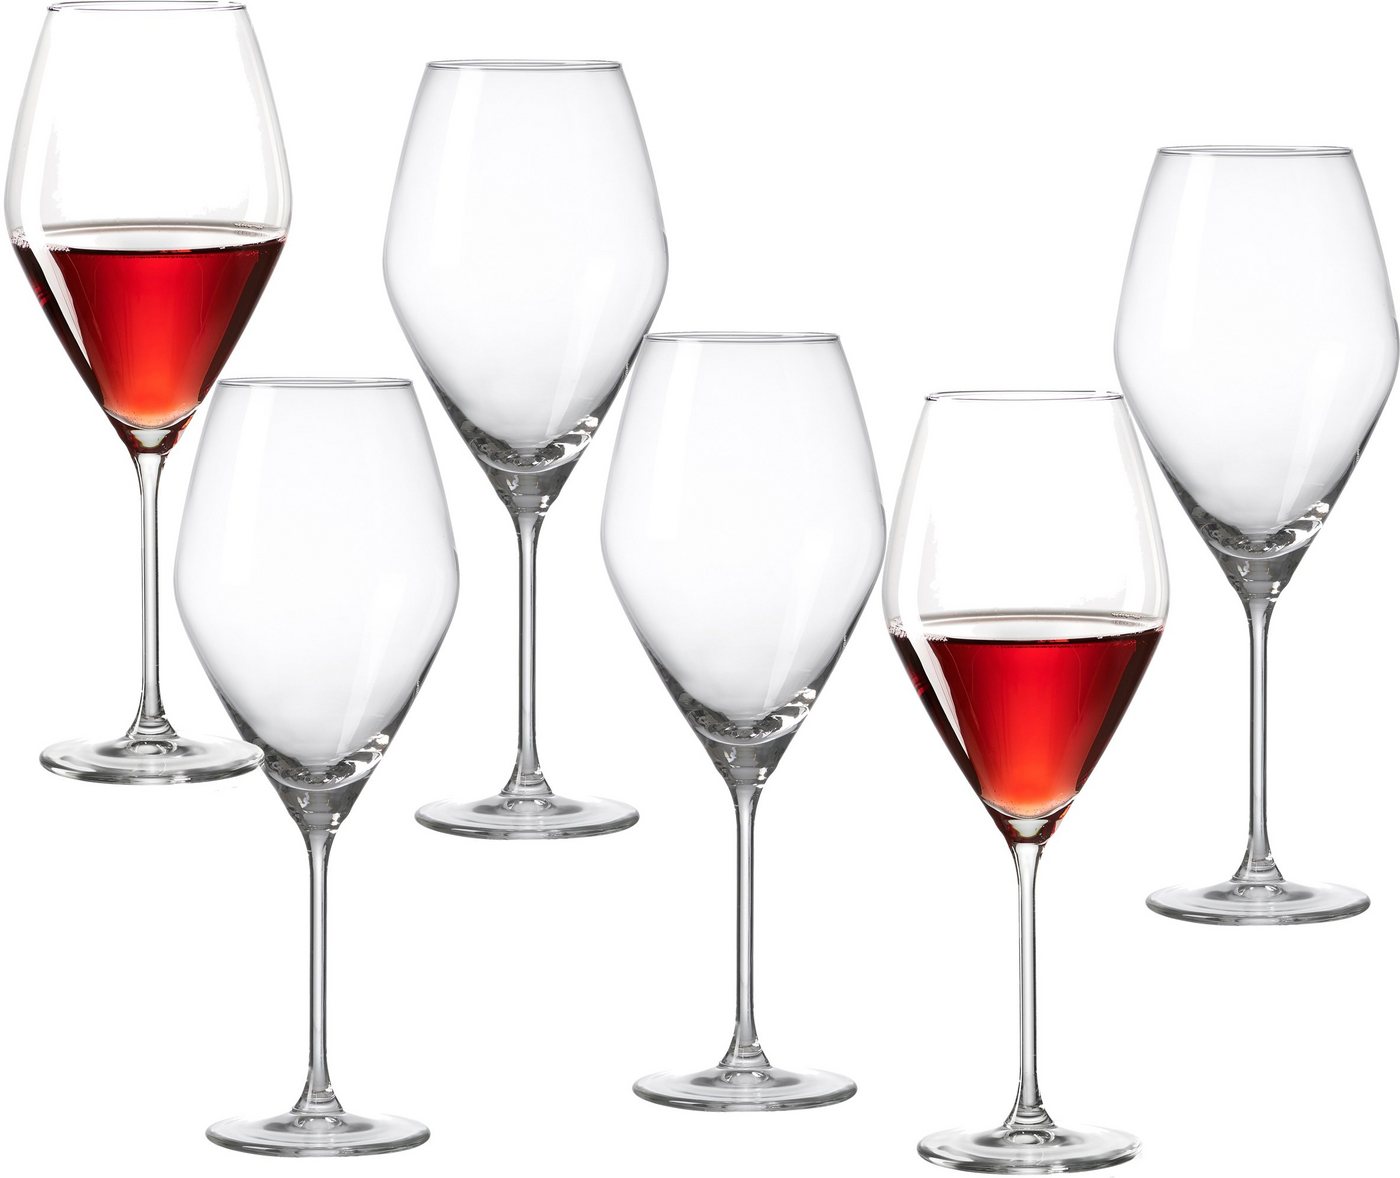 Ritzenhoff & Breker Rotweinglas Salsa, Glas, robust und kristallklar, 6-teilig von Ritzenhoff & Breker